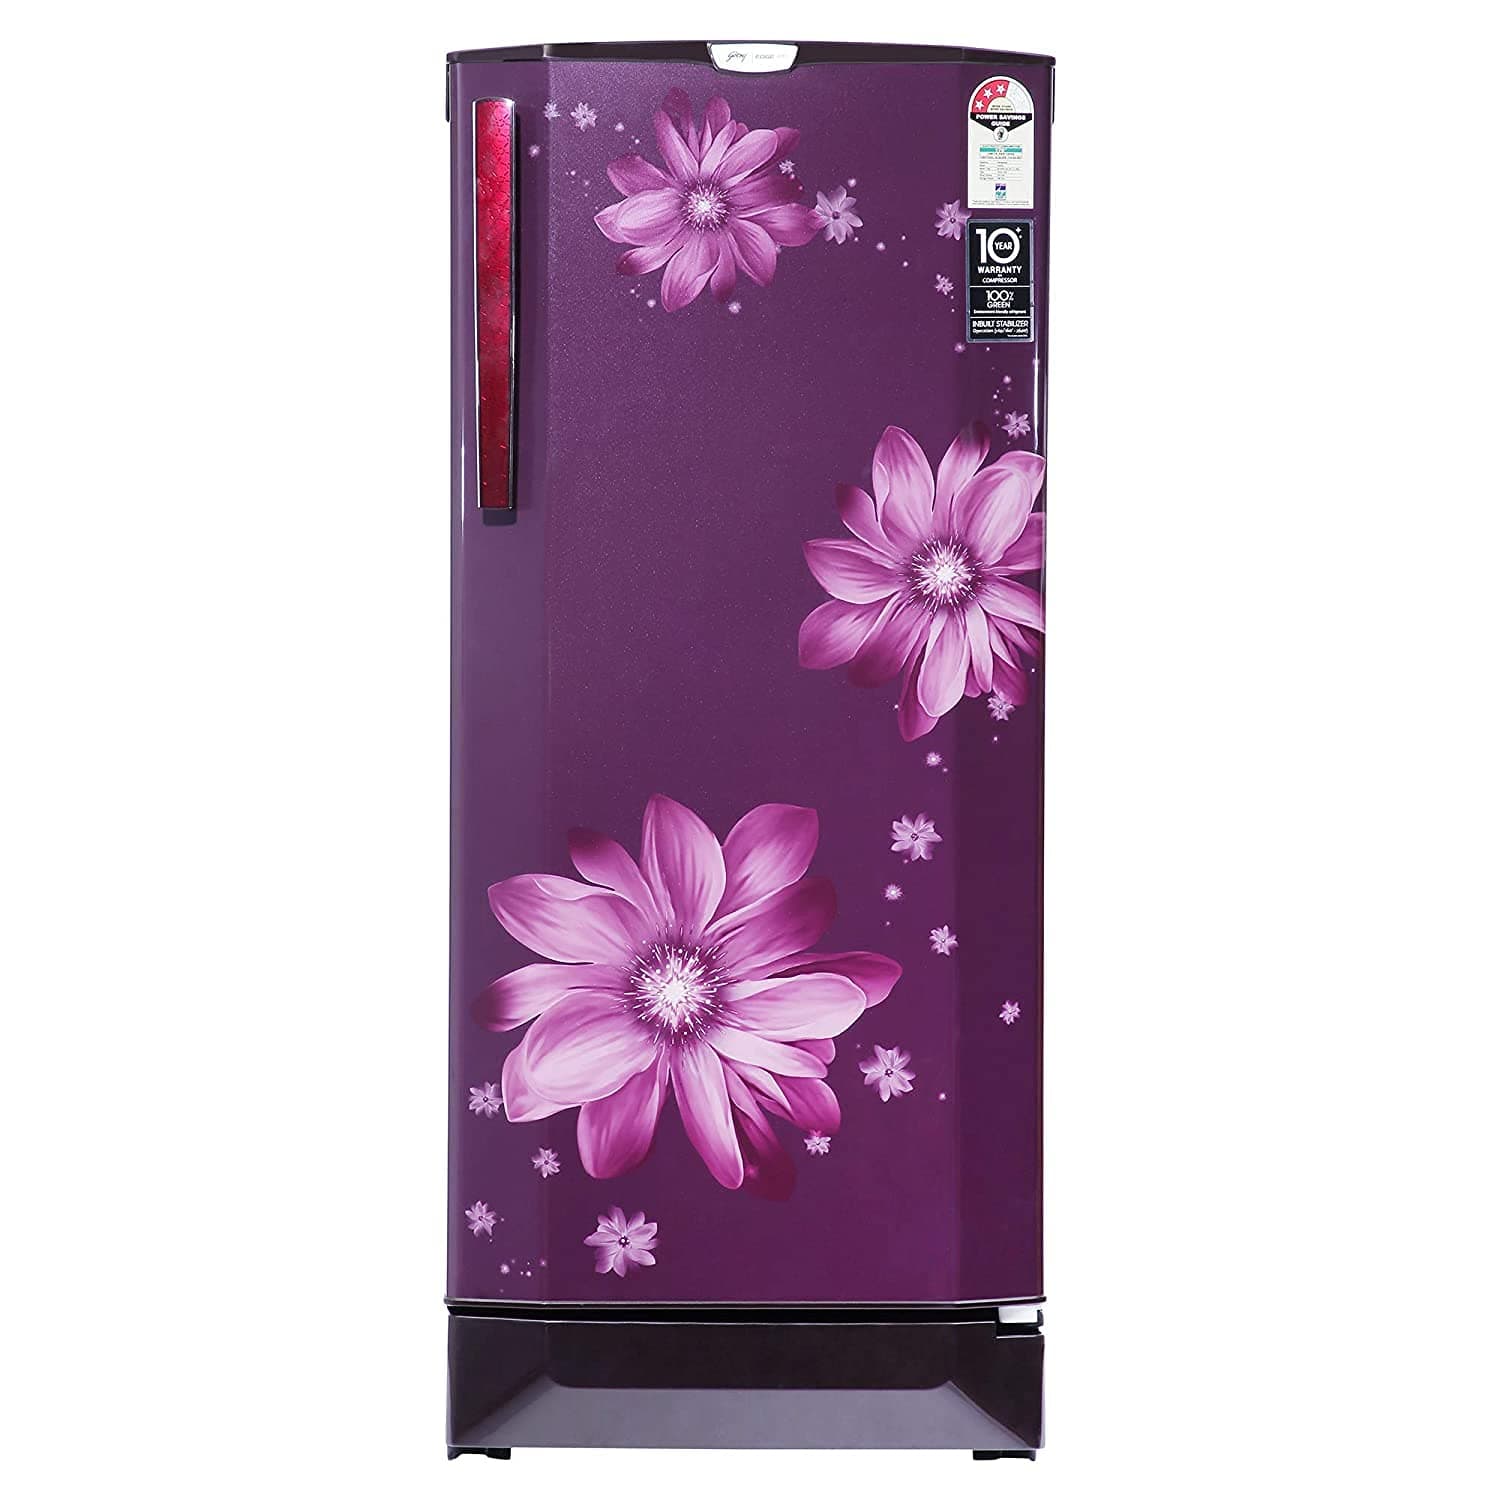 Godrej RD EDGEPRO 225C 33 TAF 210 Ltr Single Door Refrigerator